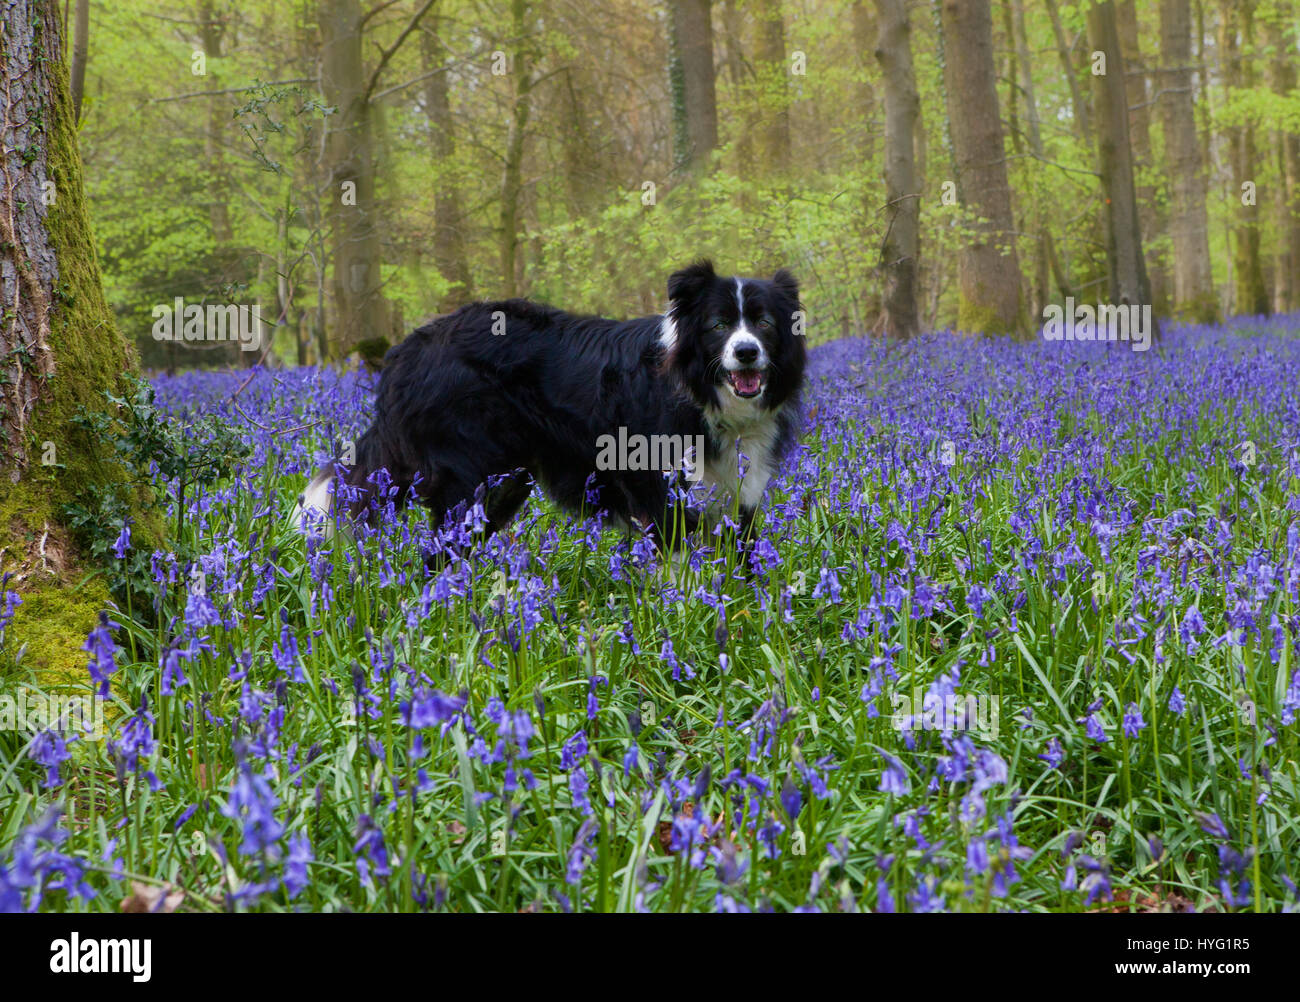 FOREST OF DEAN, UK: Ein Schäferhund, genießen Sie einen Spaziergang durch den Wald unter einem Meer von Glockenblumen.  Ein üppiger Teppich aus Glockenblumen hat der Forest of Dean auf spektakuläre Weise abgedeckt. Bilder zeigen das Moos bedeckten Baumstämme vollständig vom Meer von blau und grün aus diesen Frühling Zeit Favoriten umgeben. Stockfoto